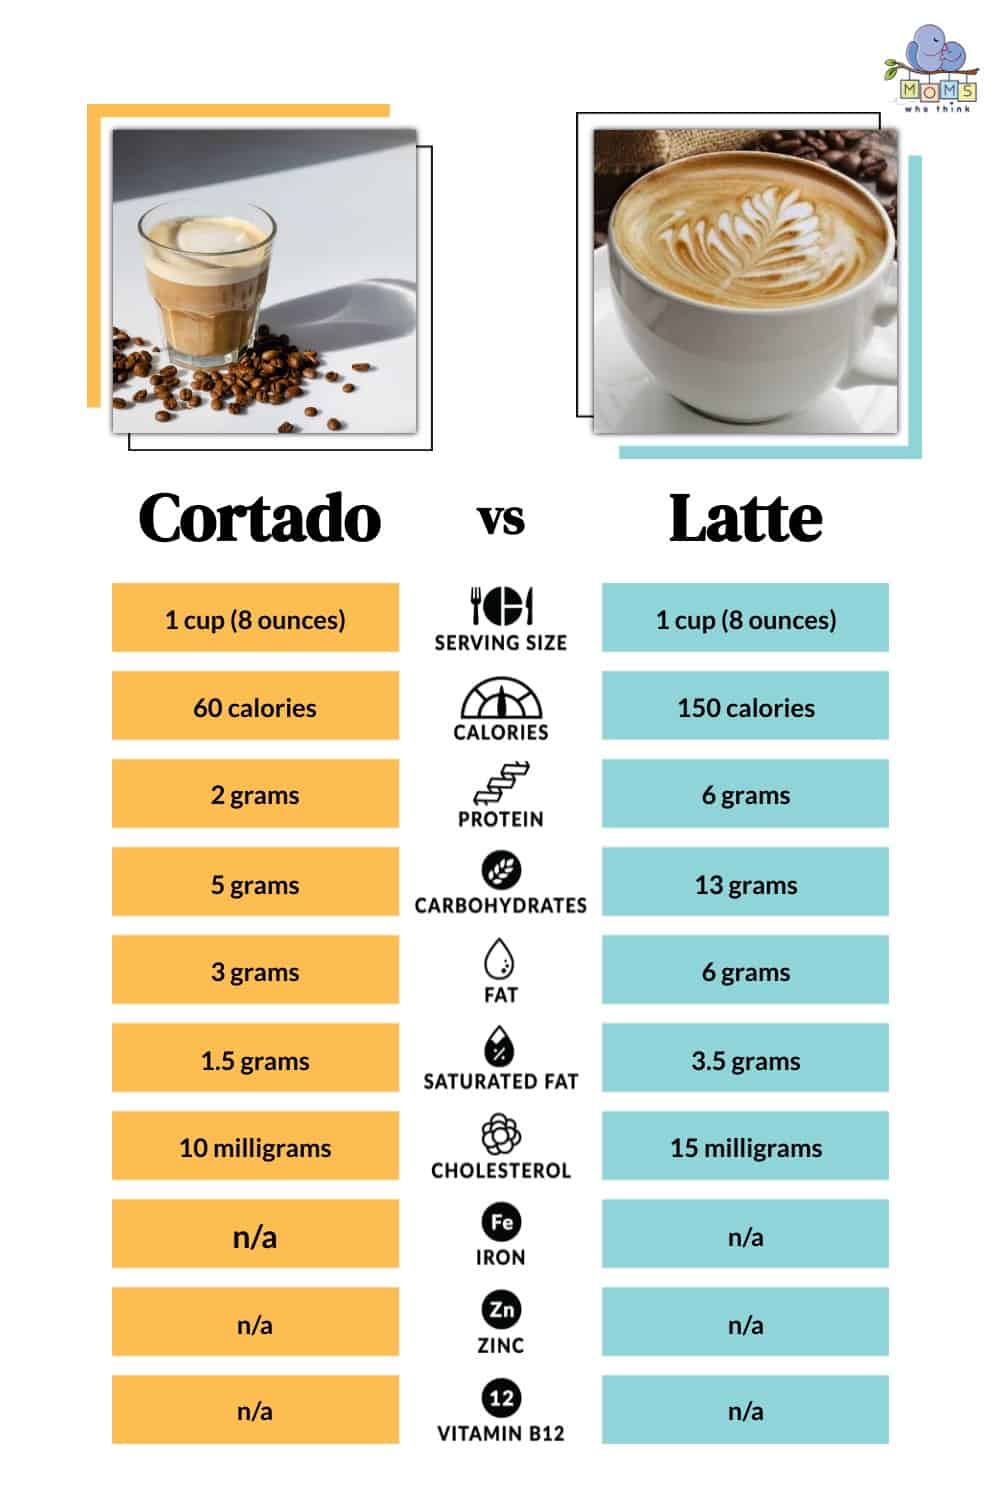 Cortado vs Latte Nutritional Facts